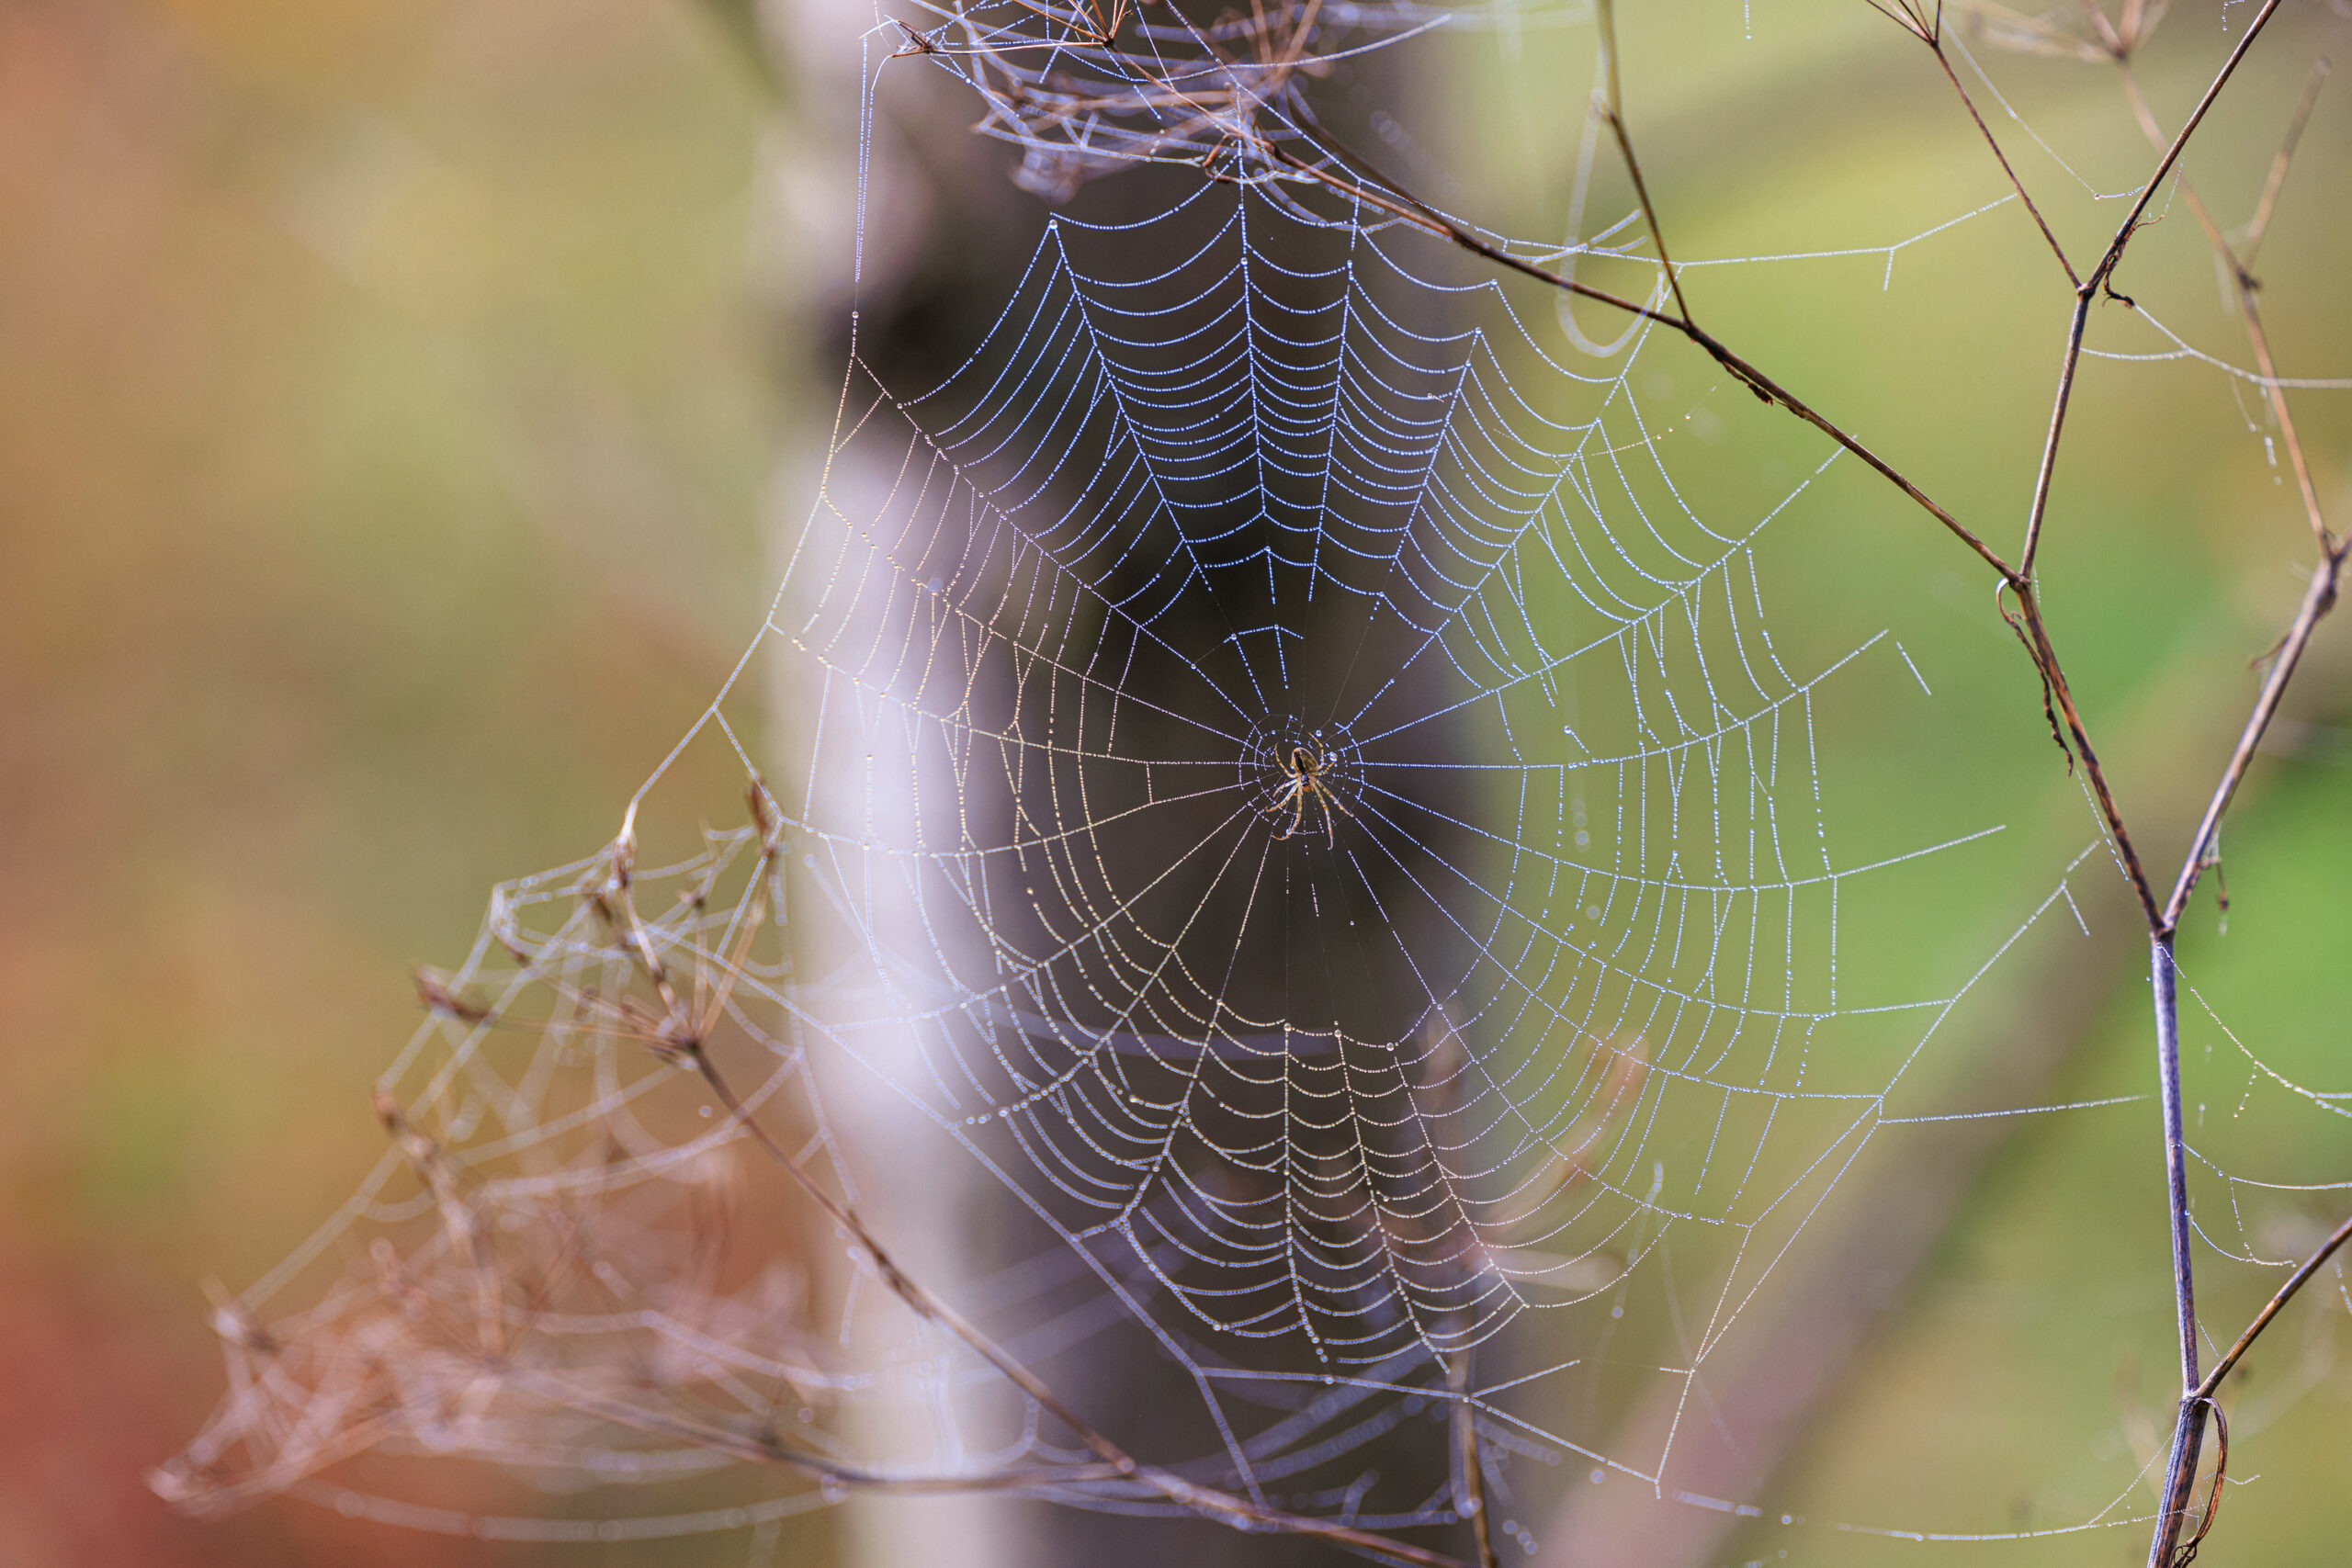 <h1>pavouk Křižák</h1><br />
Motivem fotografie je pavouk křižák na své pavučině. Na snímku jsou detailně zachycená jednotlivá vlákna pavučiny s vysráženými kapkami vody.